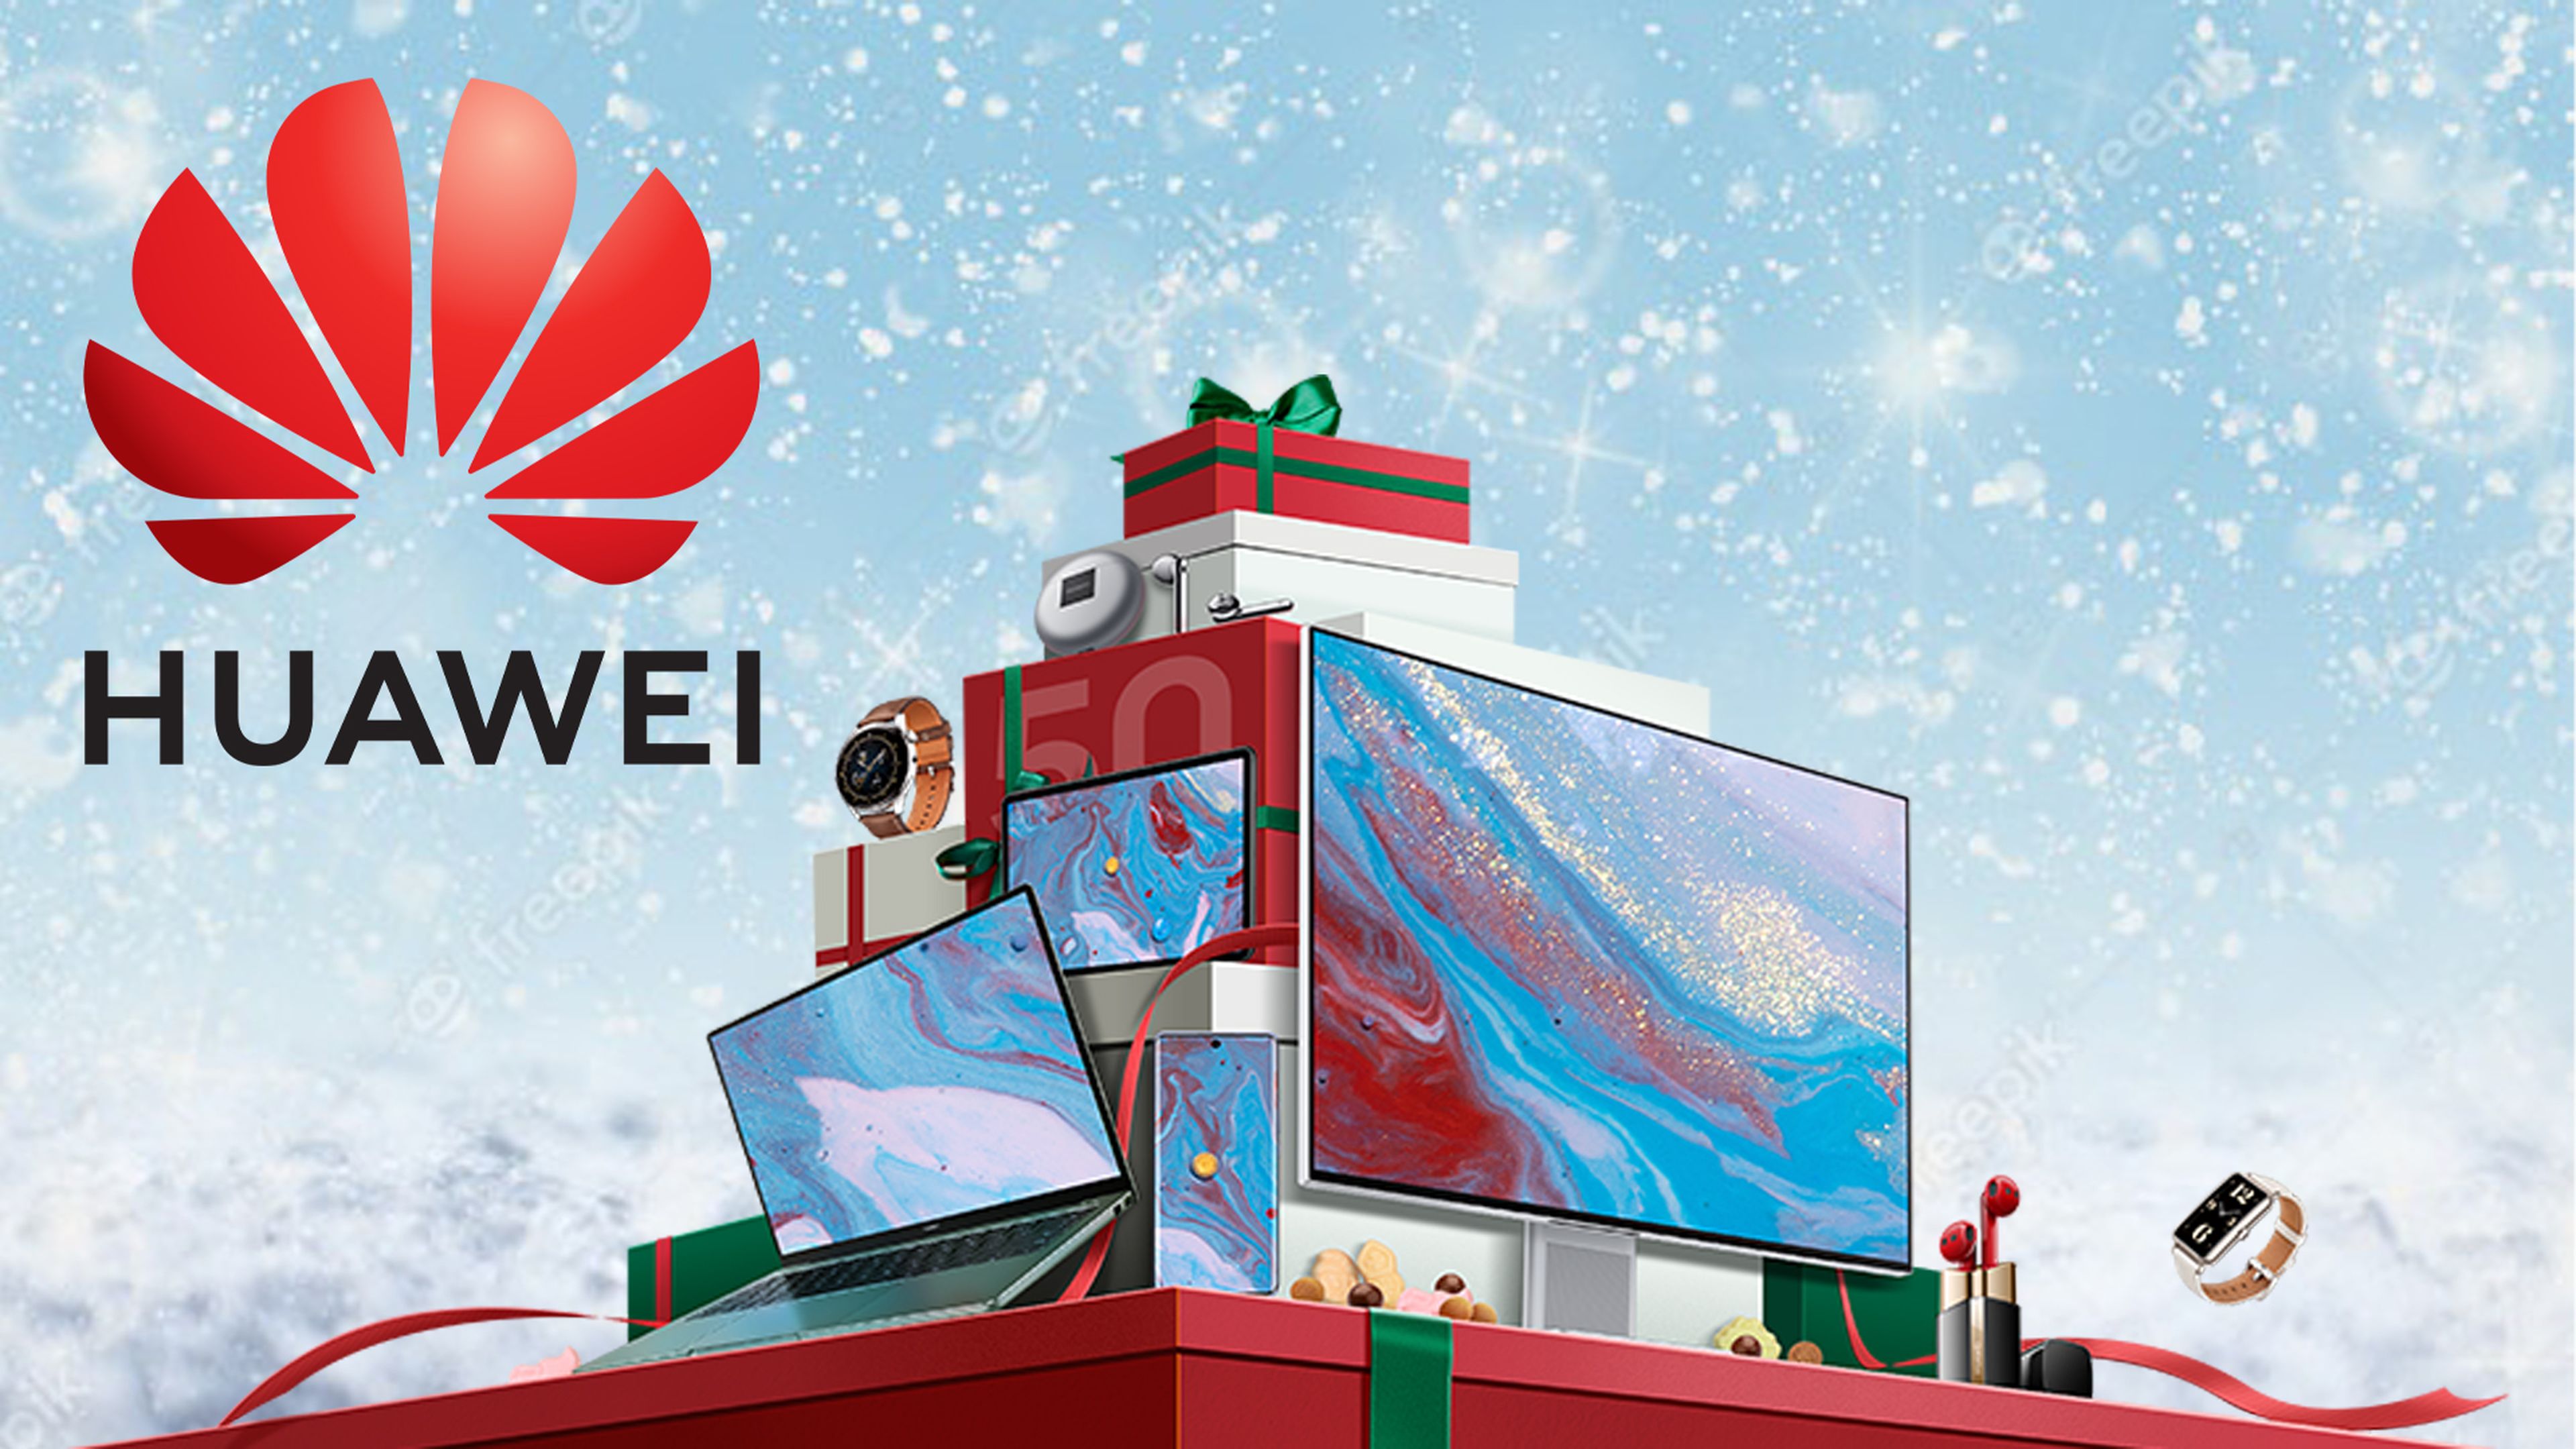 Monitor MateView de Huawei cuesta hoy en  112 euros menos